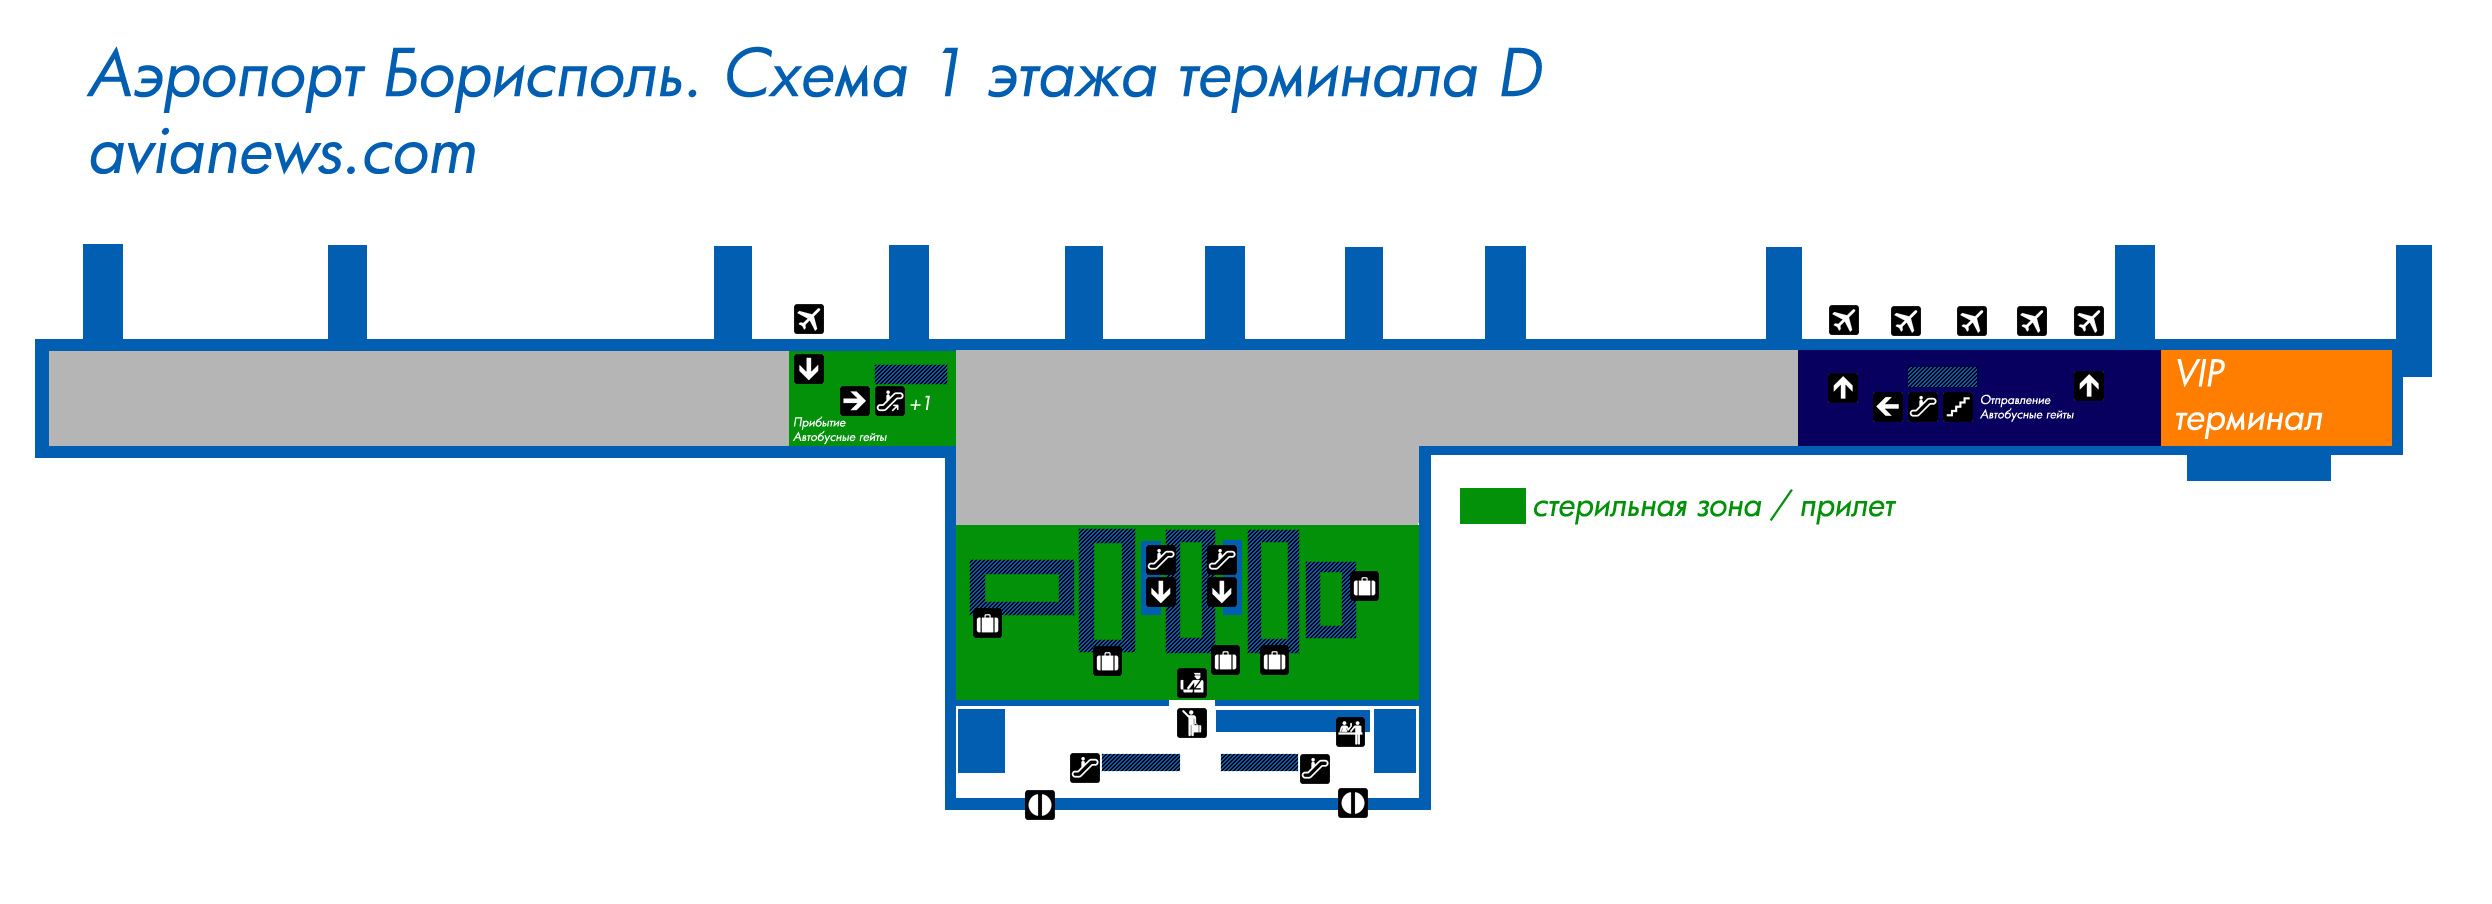 Аэропорт борисполь: расположение на карте киева, схема терминалов